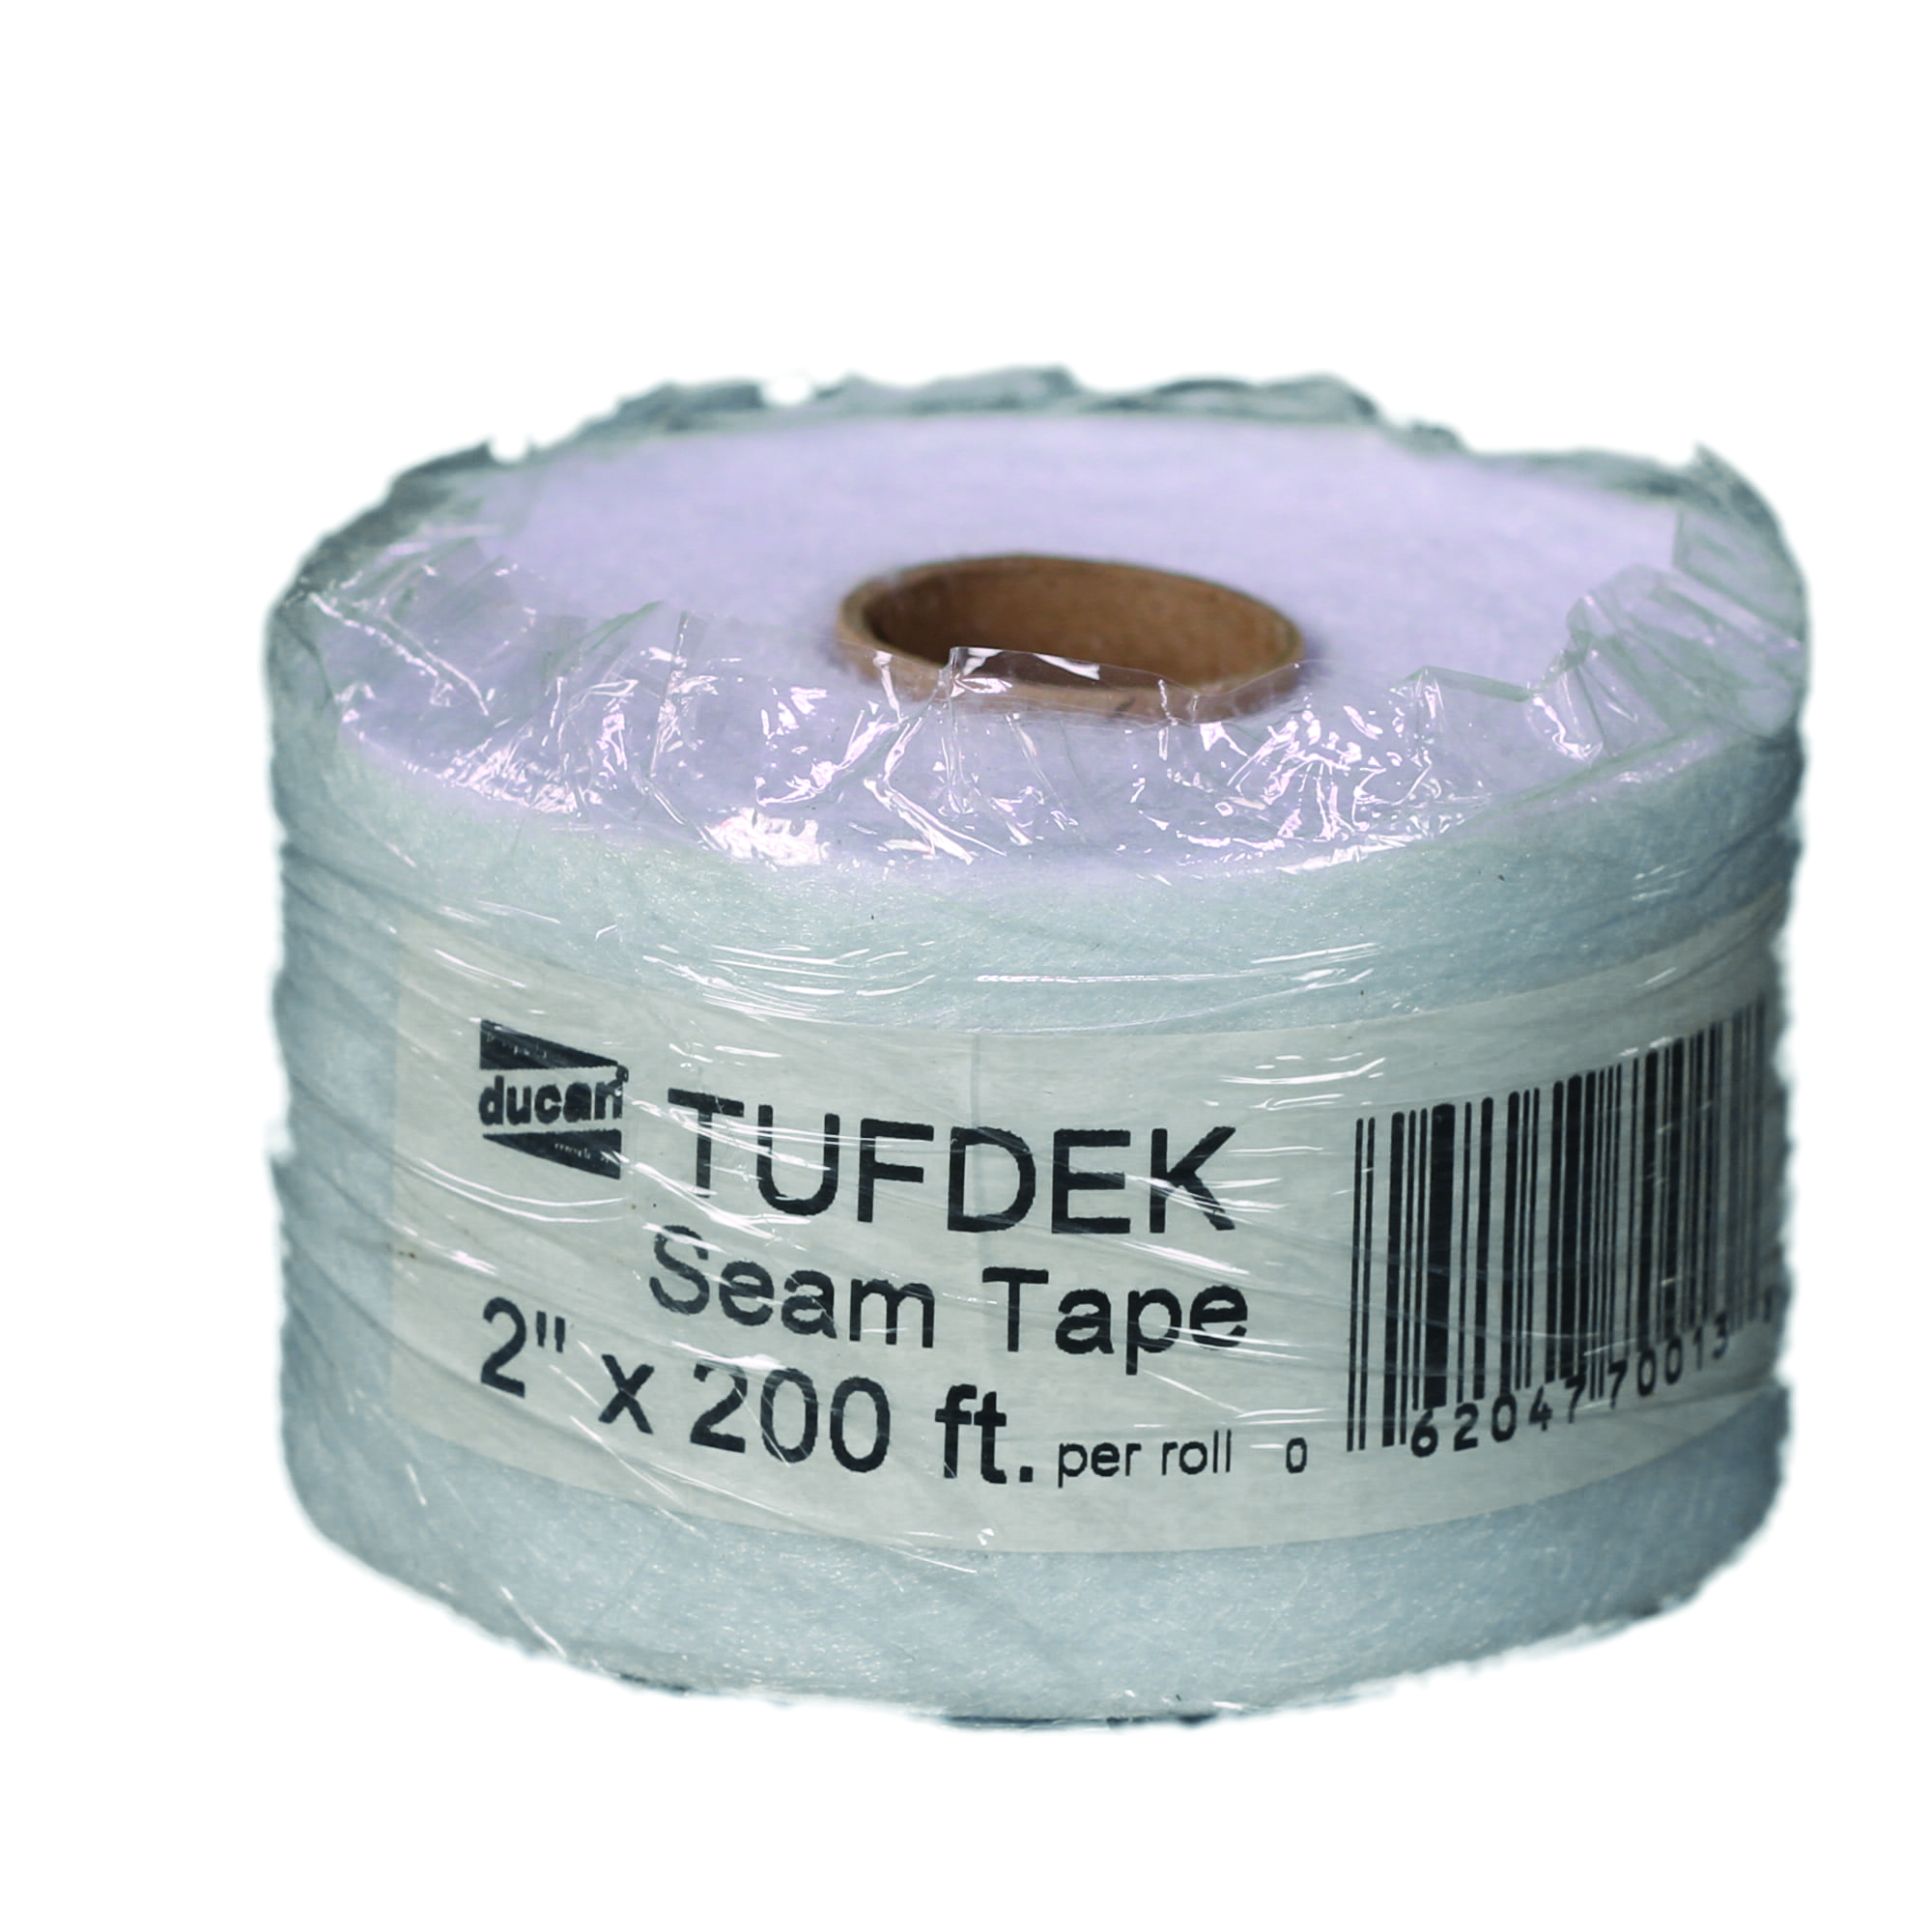 TUFDEK – SEAM TAPE (2″ x 200 FT)